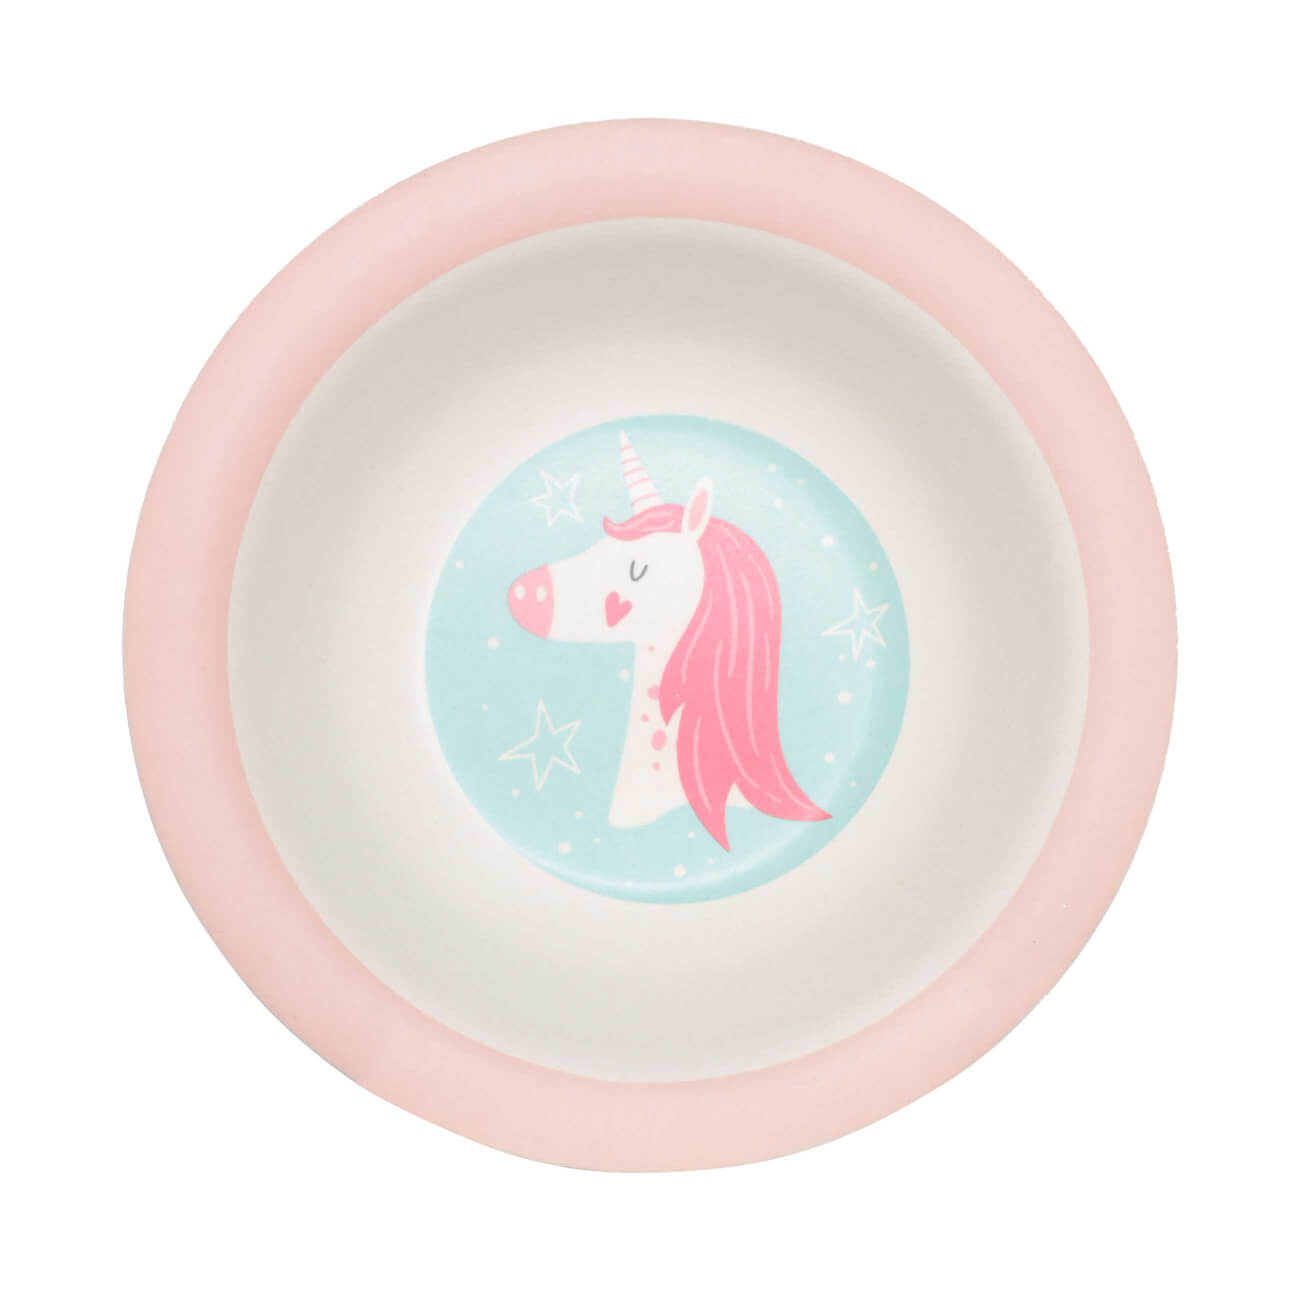 Тарелка суповая, детская, 15 см, бамбук, розово-мятная, Единорог и звезды, Unicorn тарелка суповая детская 15 см бамбук розово мятная единорог и звезды unicorn